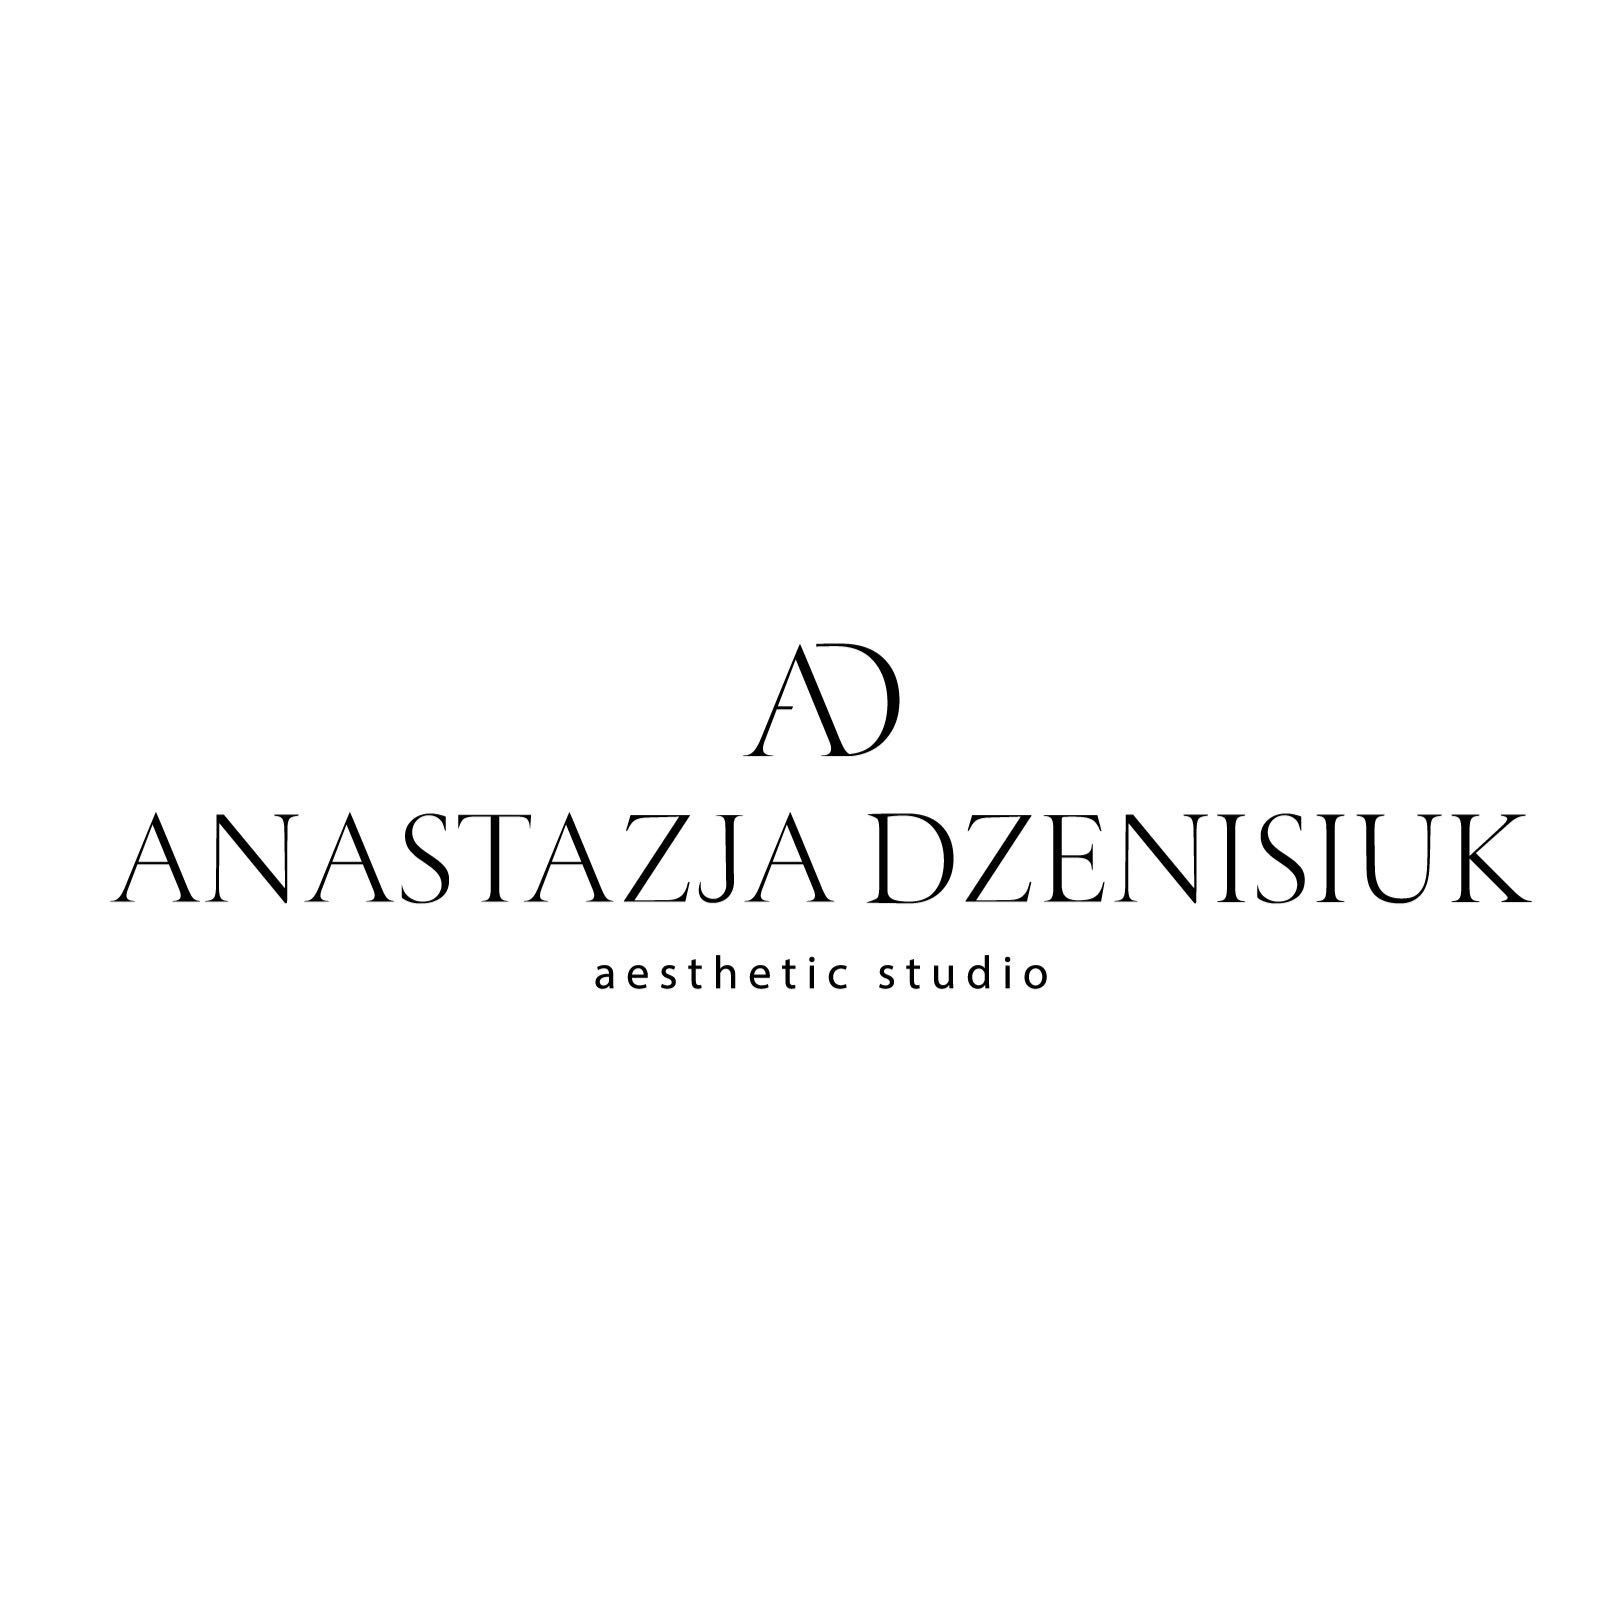 AESTHETIC STUDIO Anastazja Dzenisiuk, Słonimska 5, U4, 15-028, Białystok